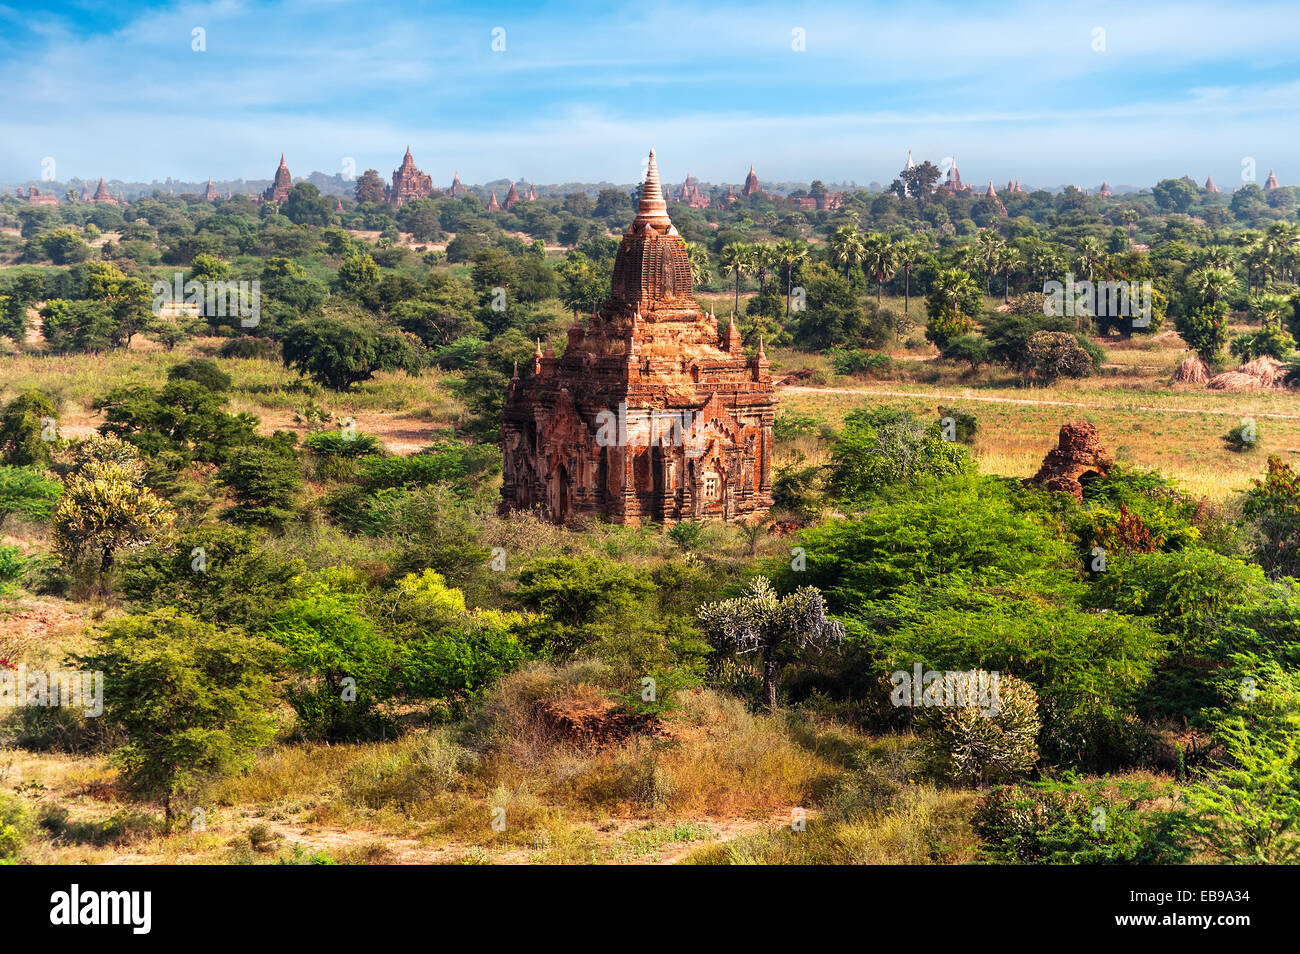 Reisen Sie, Landschaften und Destinationen. Beeindruckende Architektur der alten buddhistischen Tempel im Königreich Bagan, Myanmar (Burma) Stockfoto